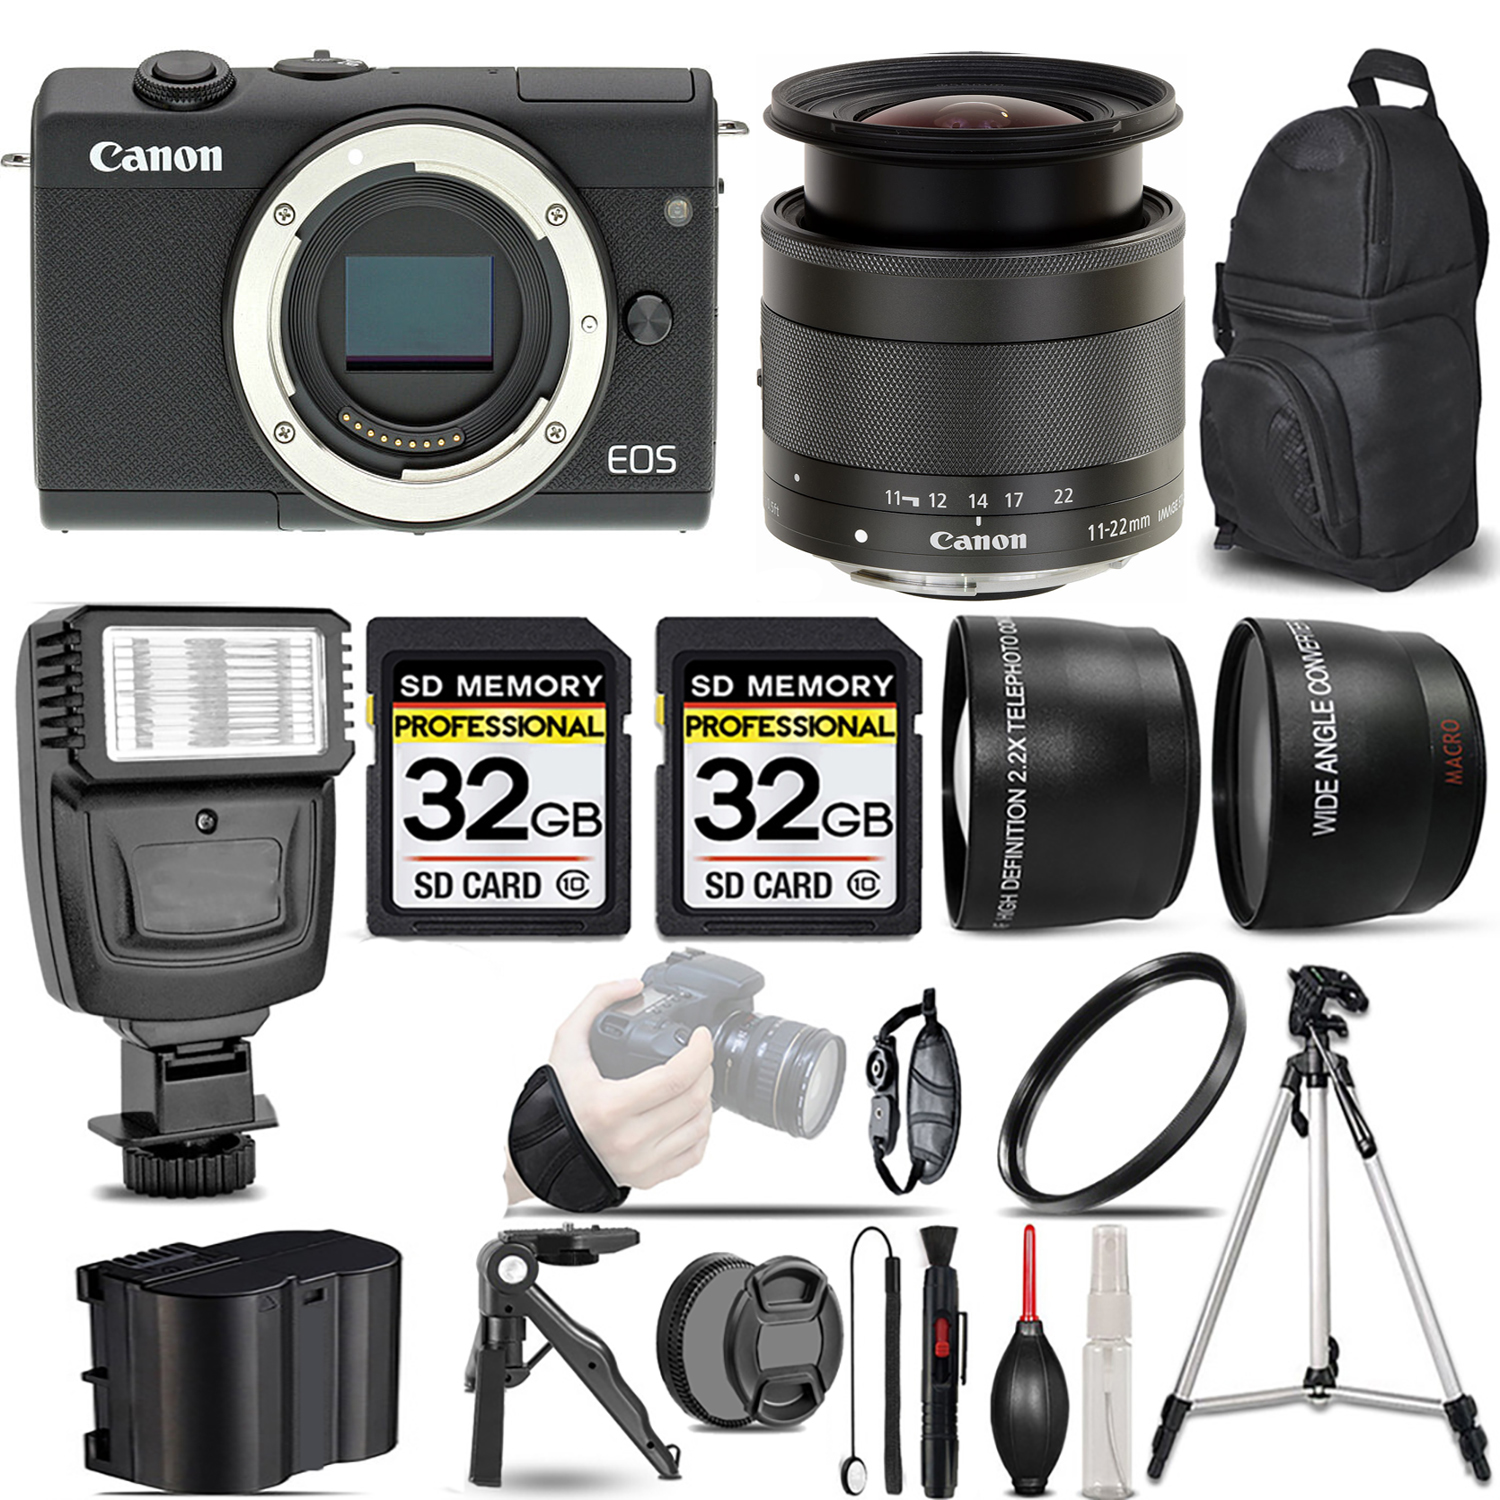 EOS M200 Camera (Black) +11-22mm f/4-5.6 IS STM Lens +Flash +64GB- Kit *FREE SHIPPING*